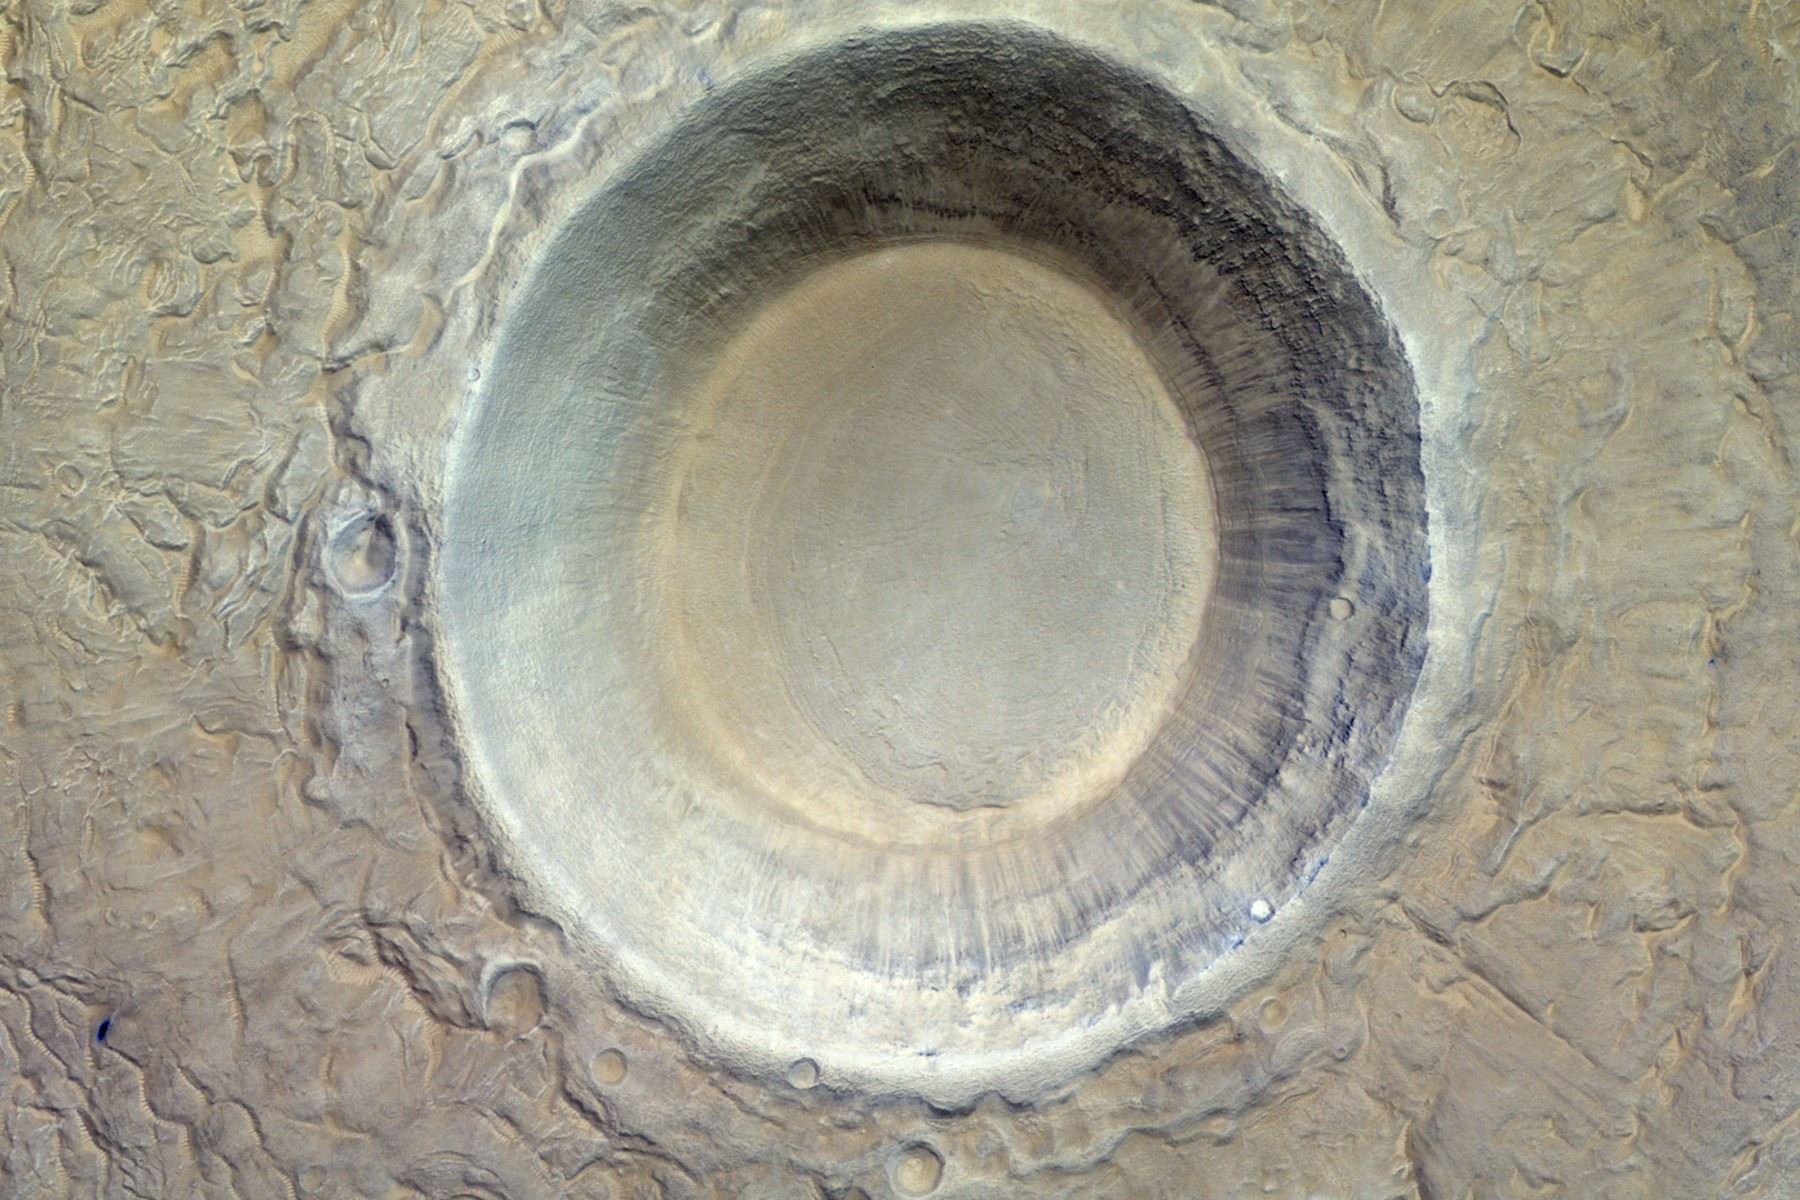 Conoce el gigante cráter descubierto en la superficie de Marte.